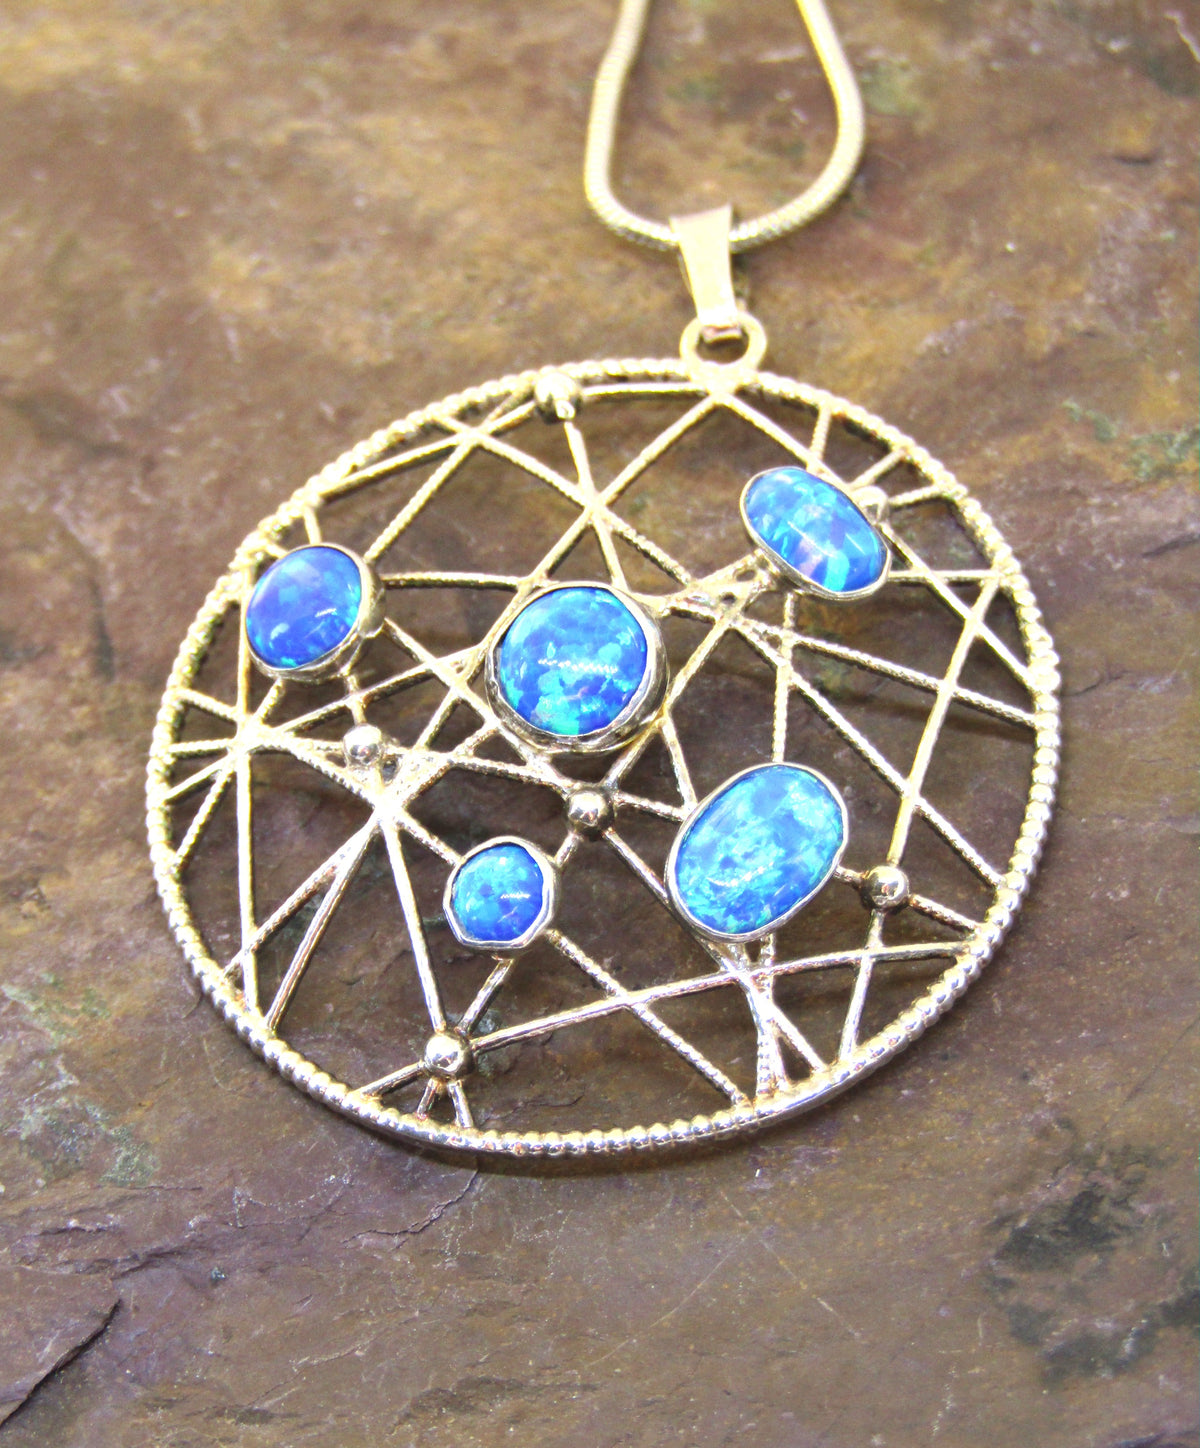 Blue Opal Pendant by Lavan